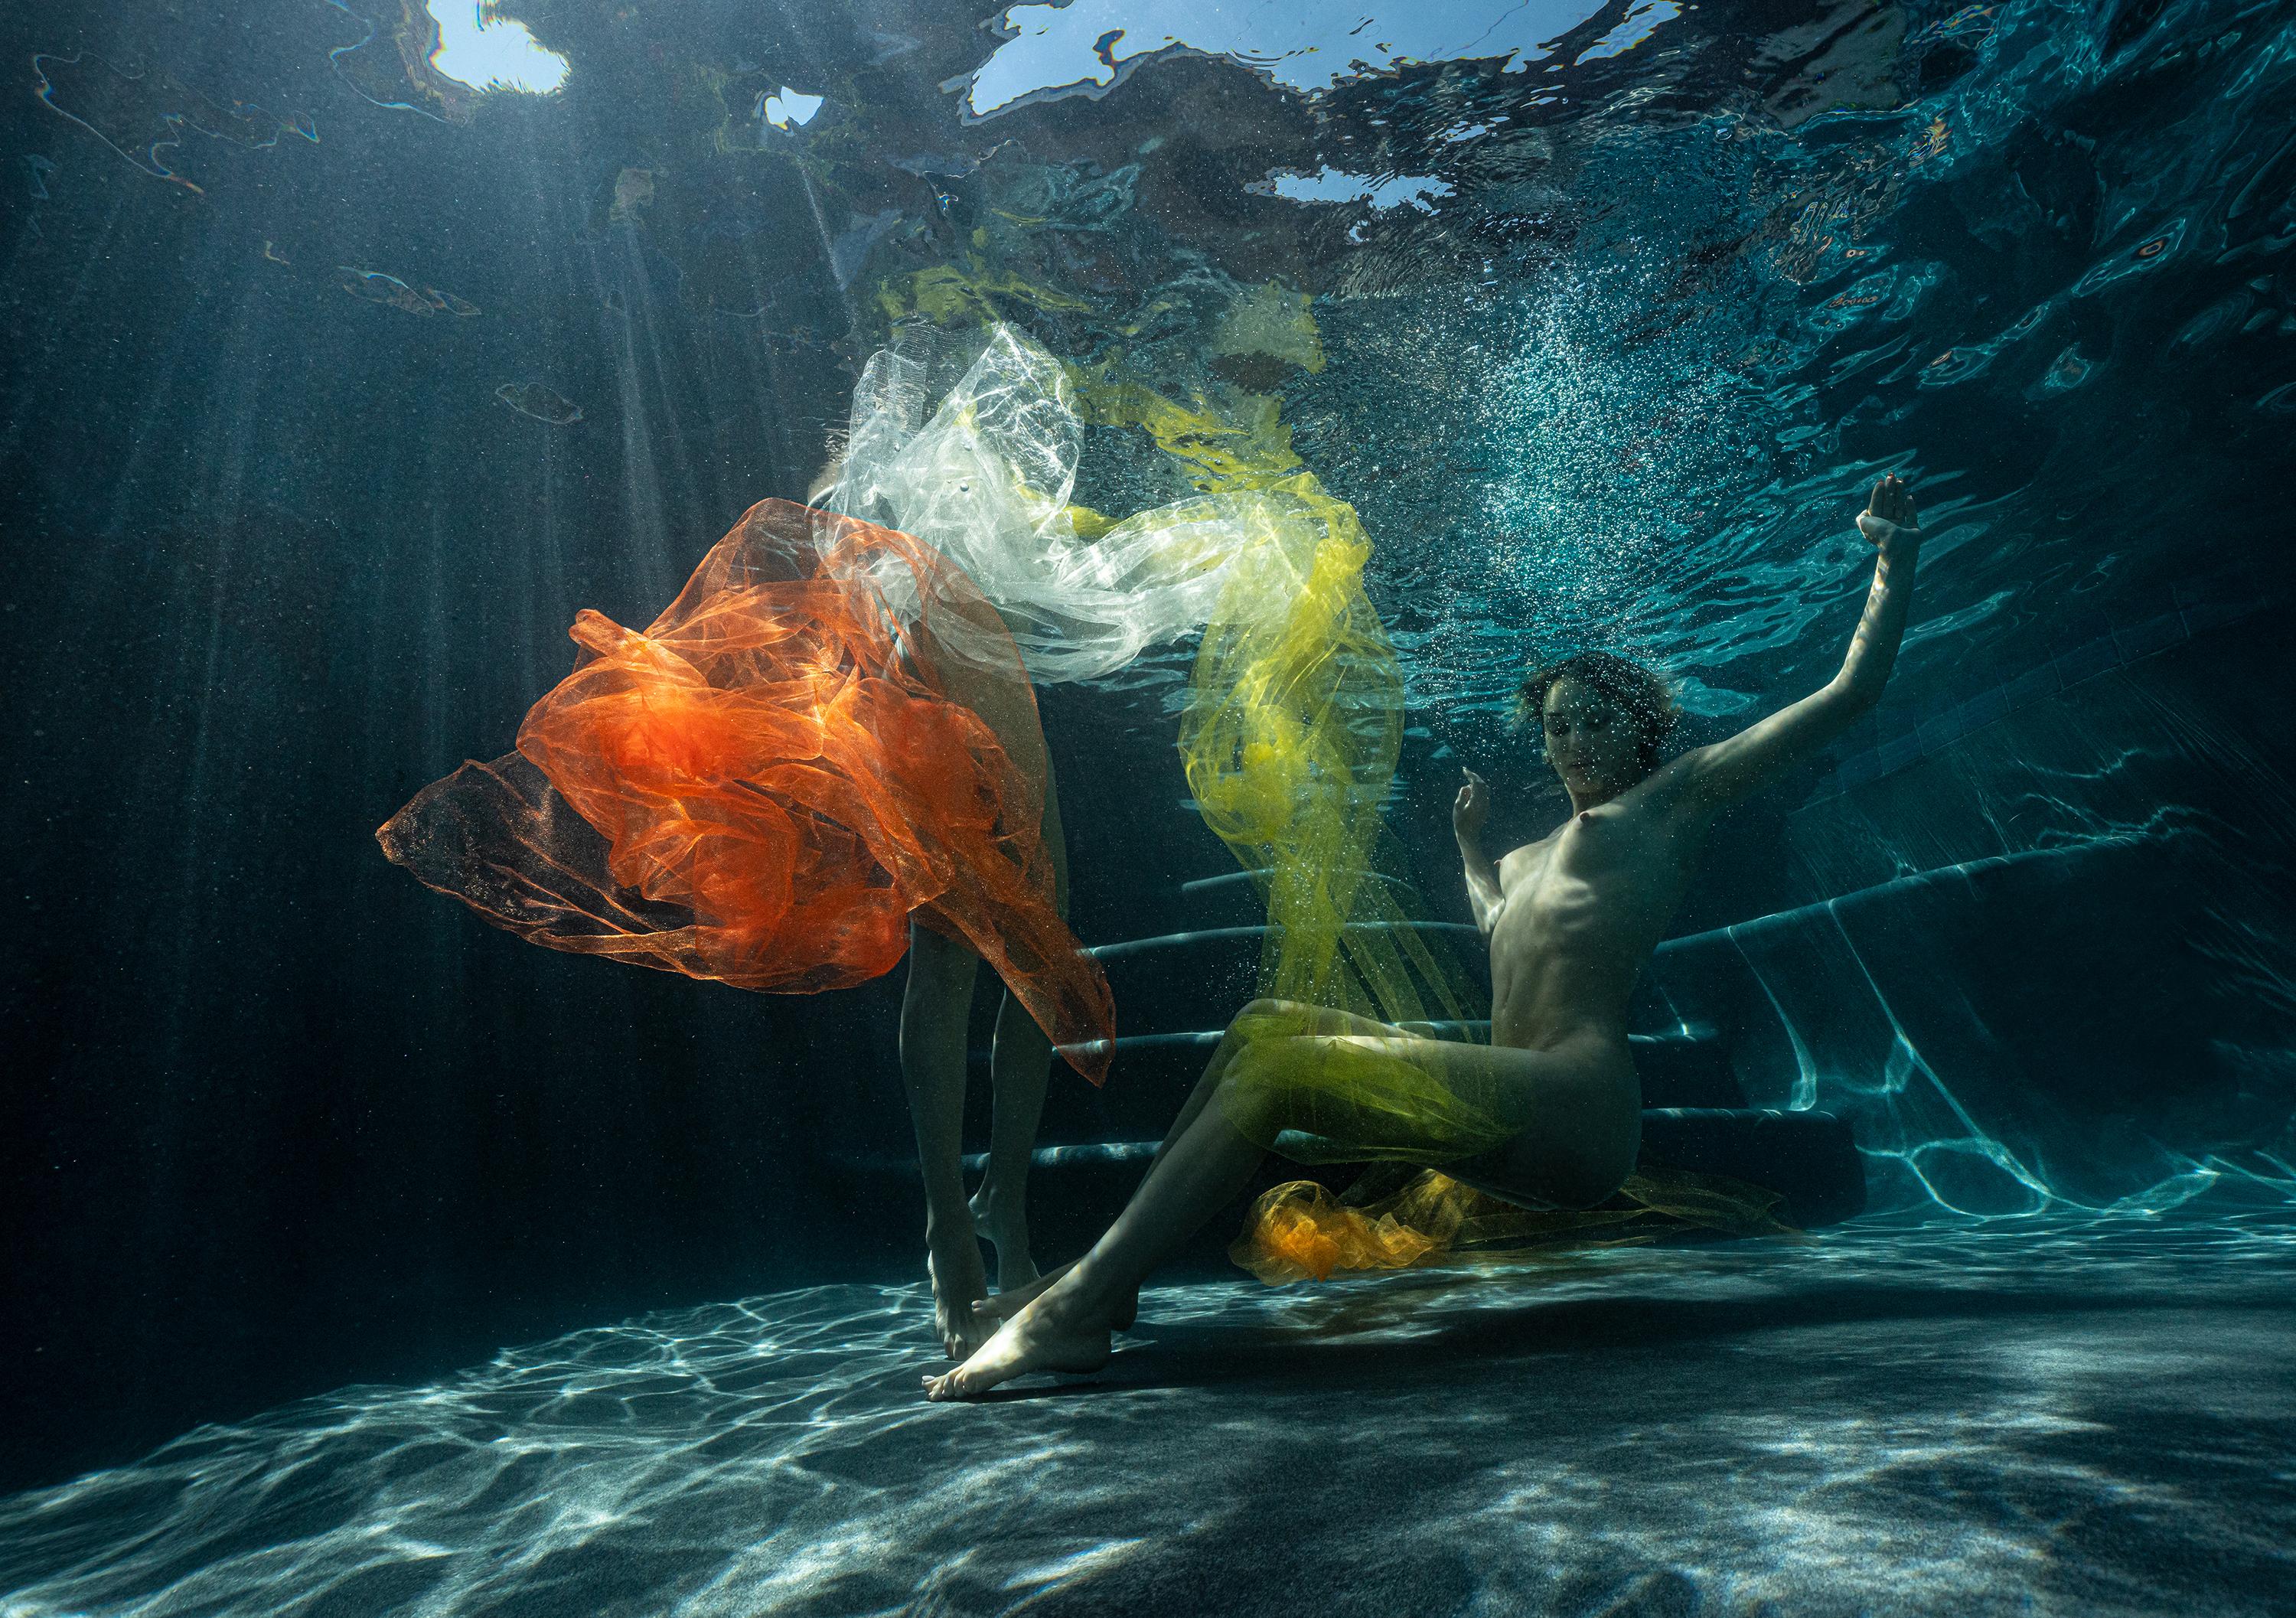 Alex Sher Color Photograph – Pool Party IX – Aktfotografie unter Wasser – Archivalischer Pigmentdruck 16x24"